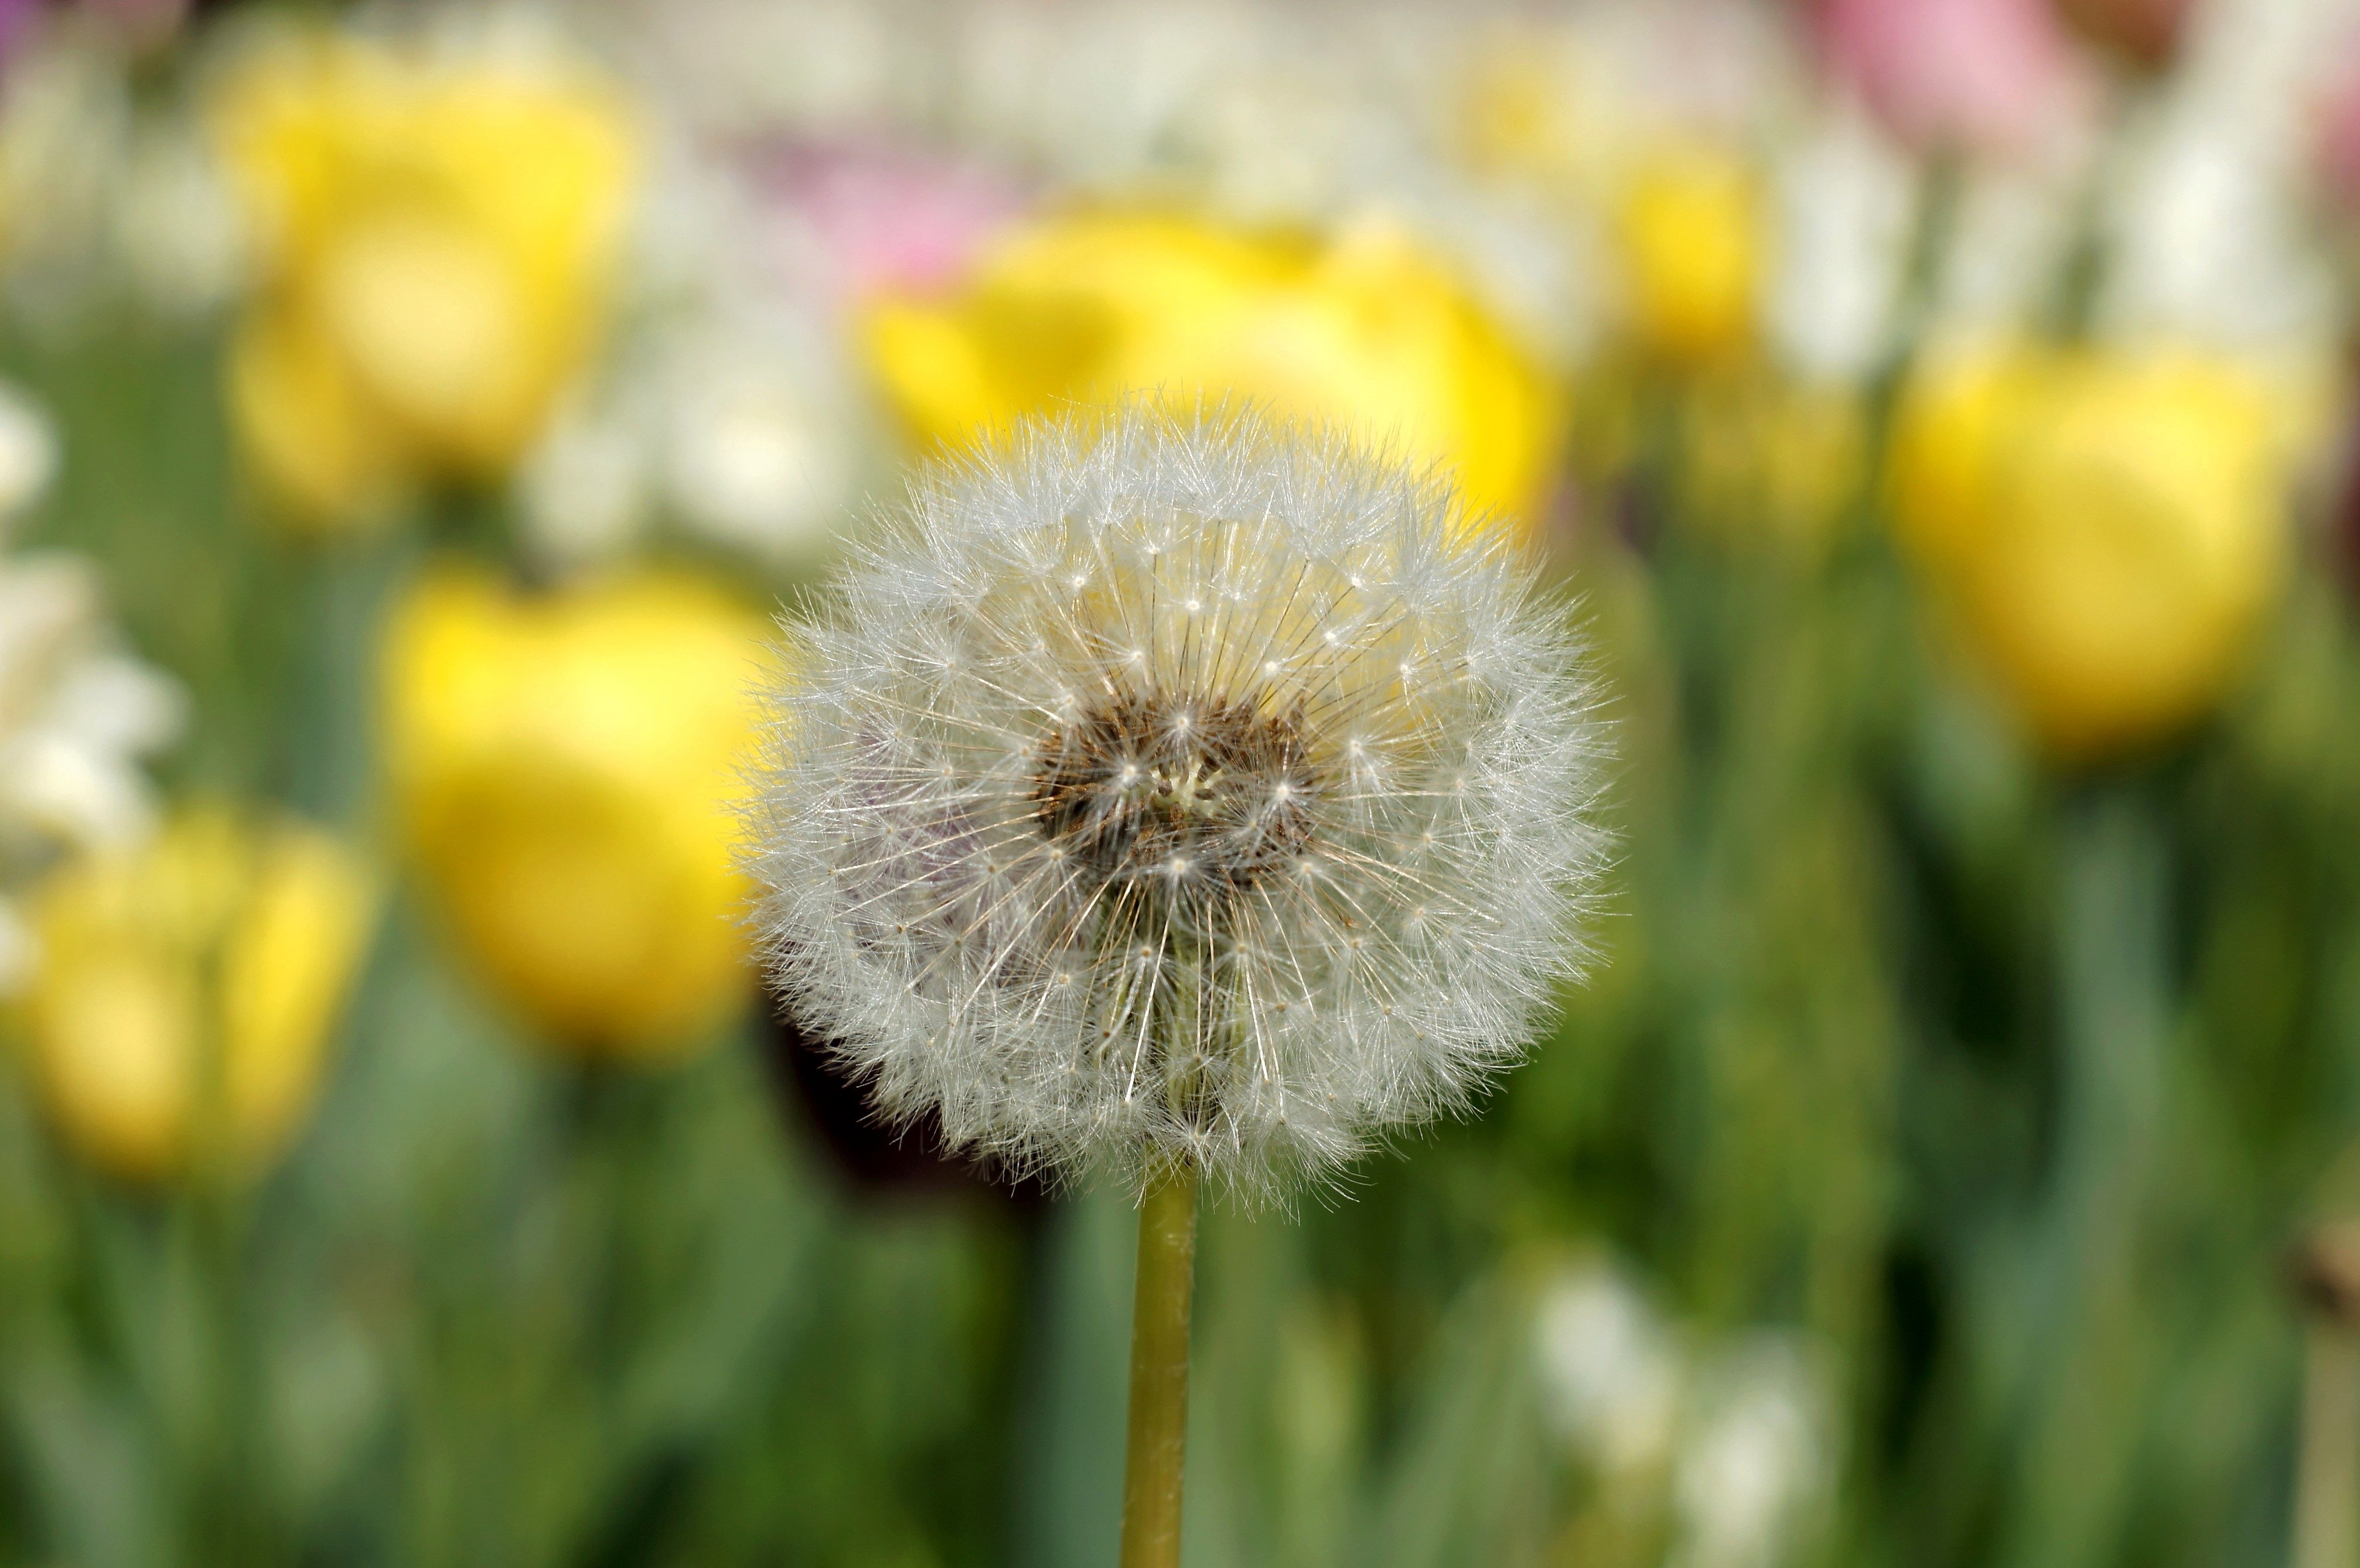 Free picture: Dandelion, flower, seed, flora, vegetation, spring ...